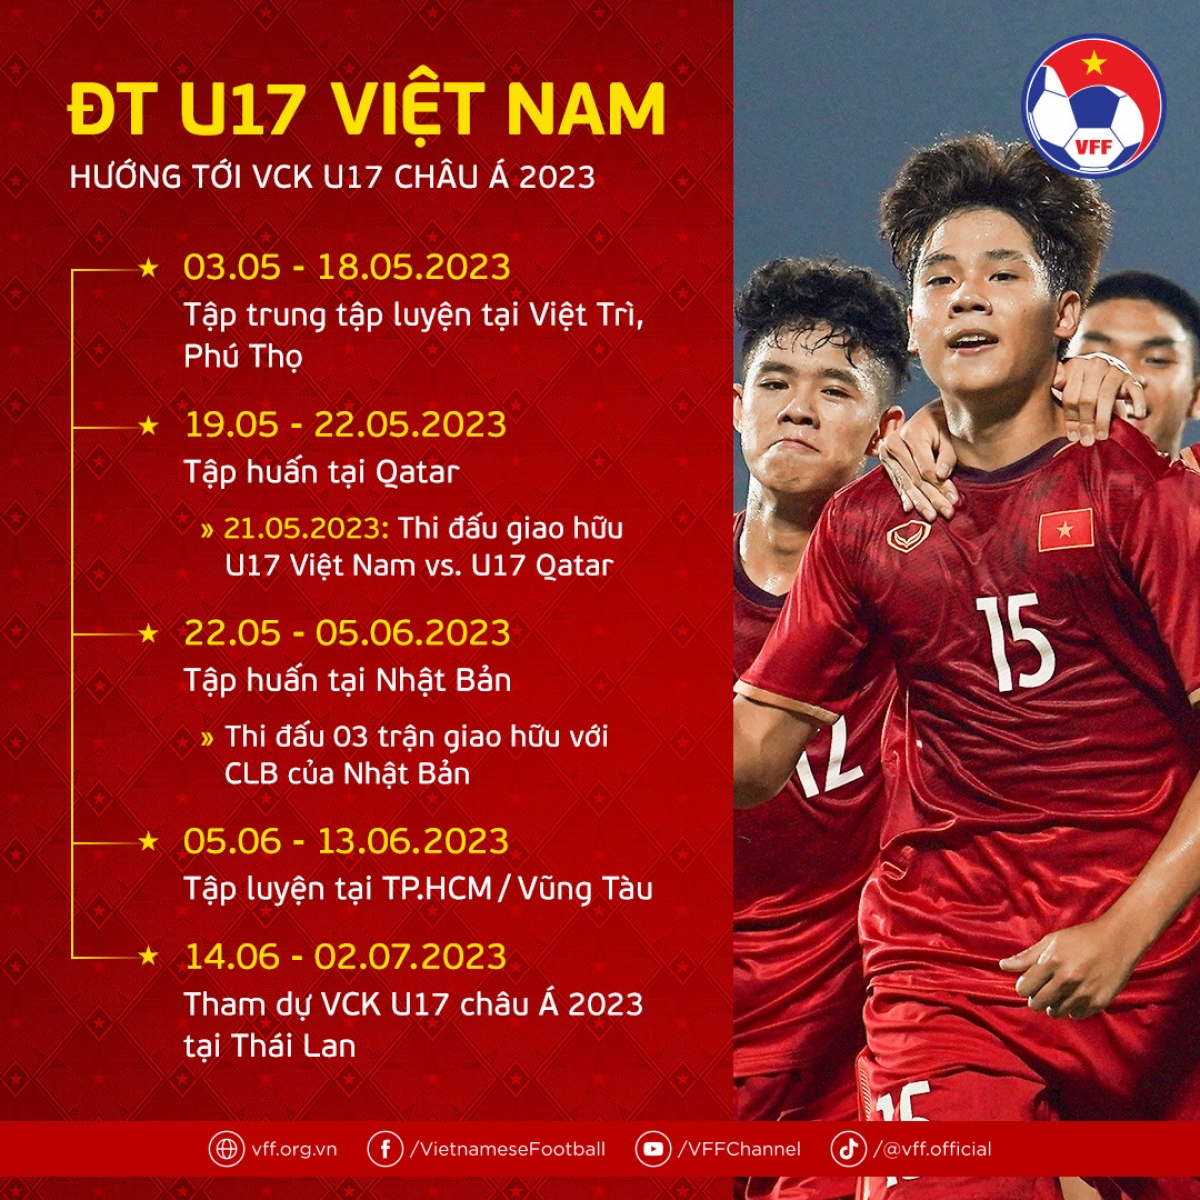 Kế hoạch tập luyện của U17 Việt Nam trước VCK U17 châu Á 2023